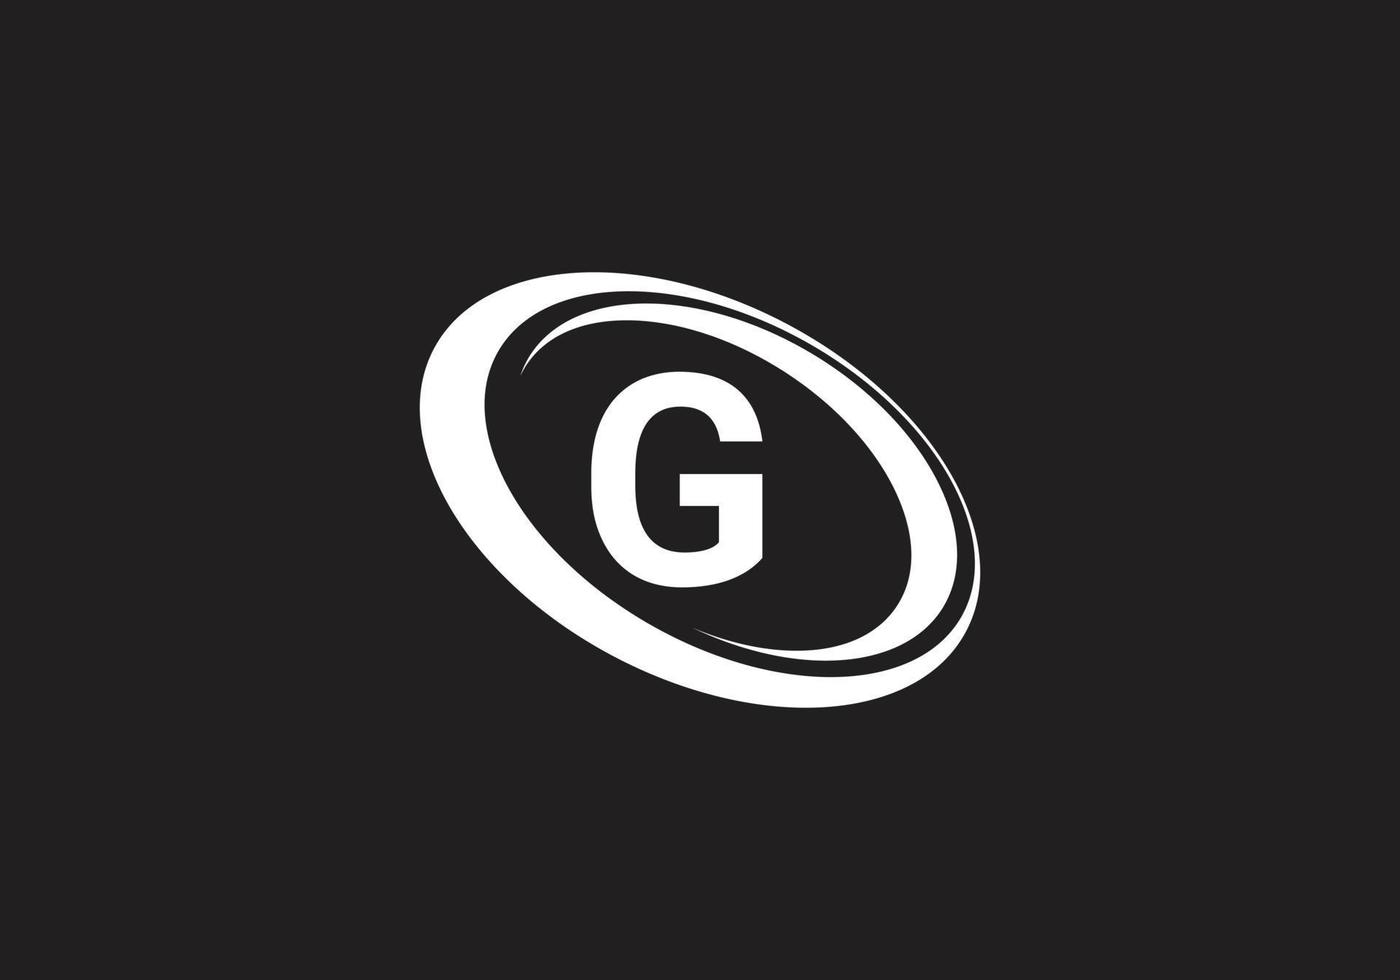 dit is een letter g logo pictogram ontwerp vector